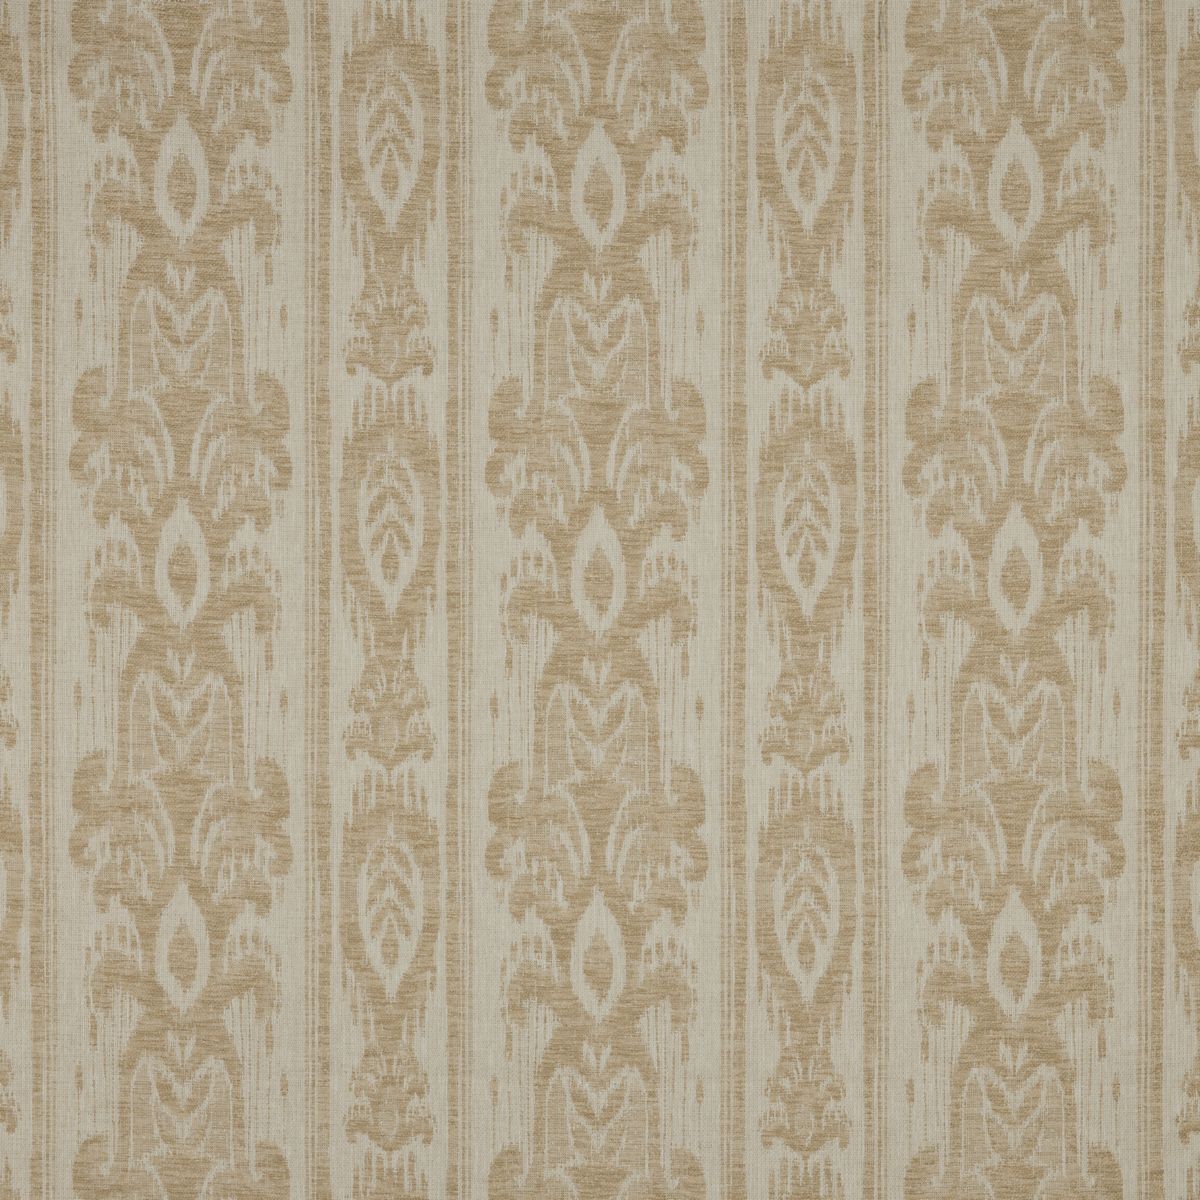 Vigneto Sandstone Fabric by iLiv